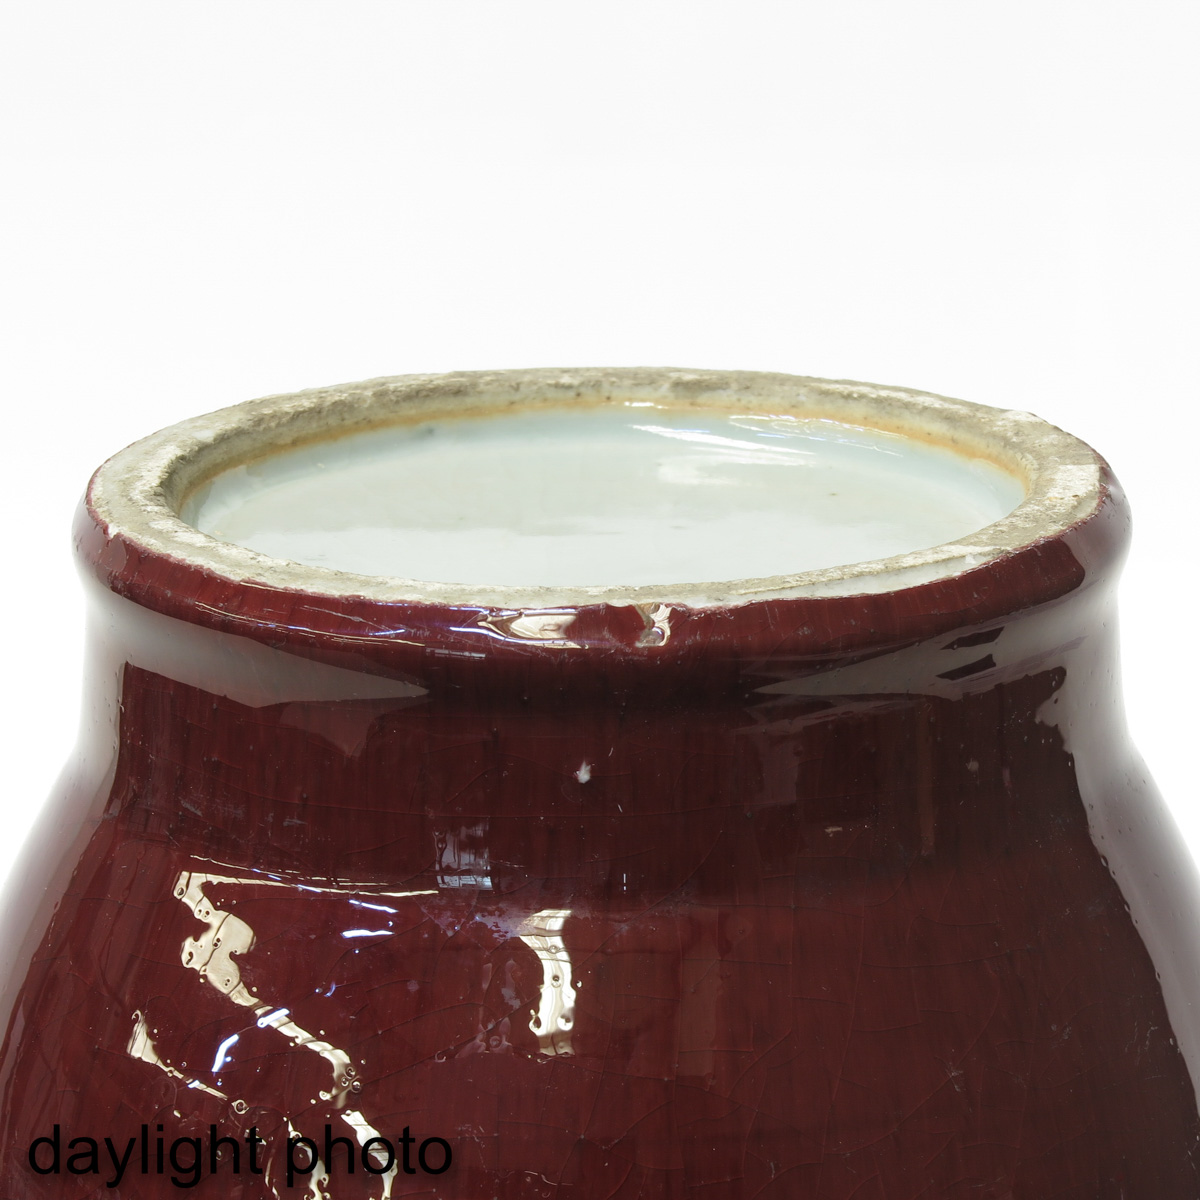 A Sang de Boeuf Decor Vase - Image 8 of 9